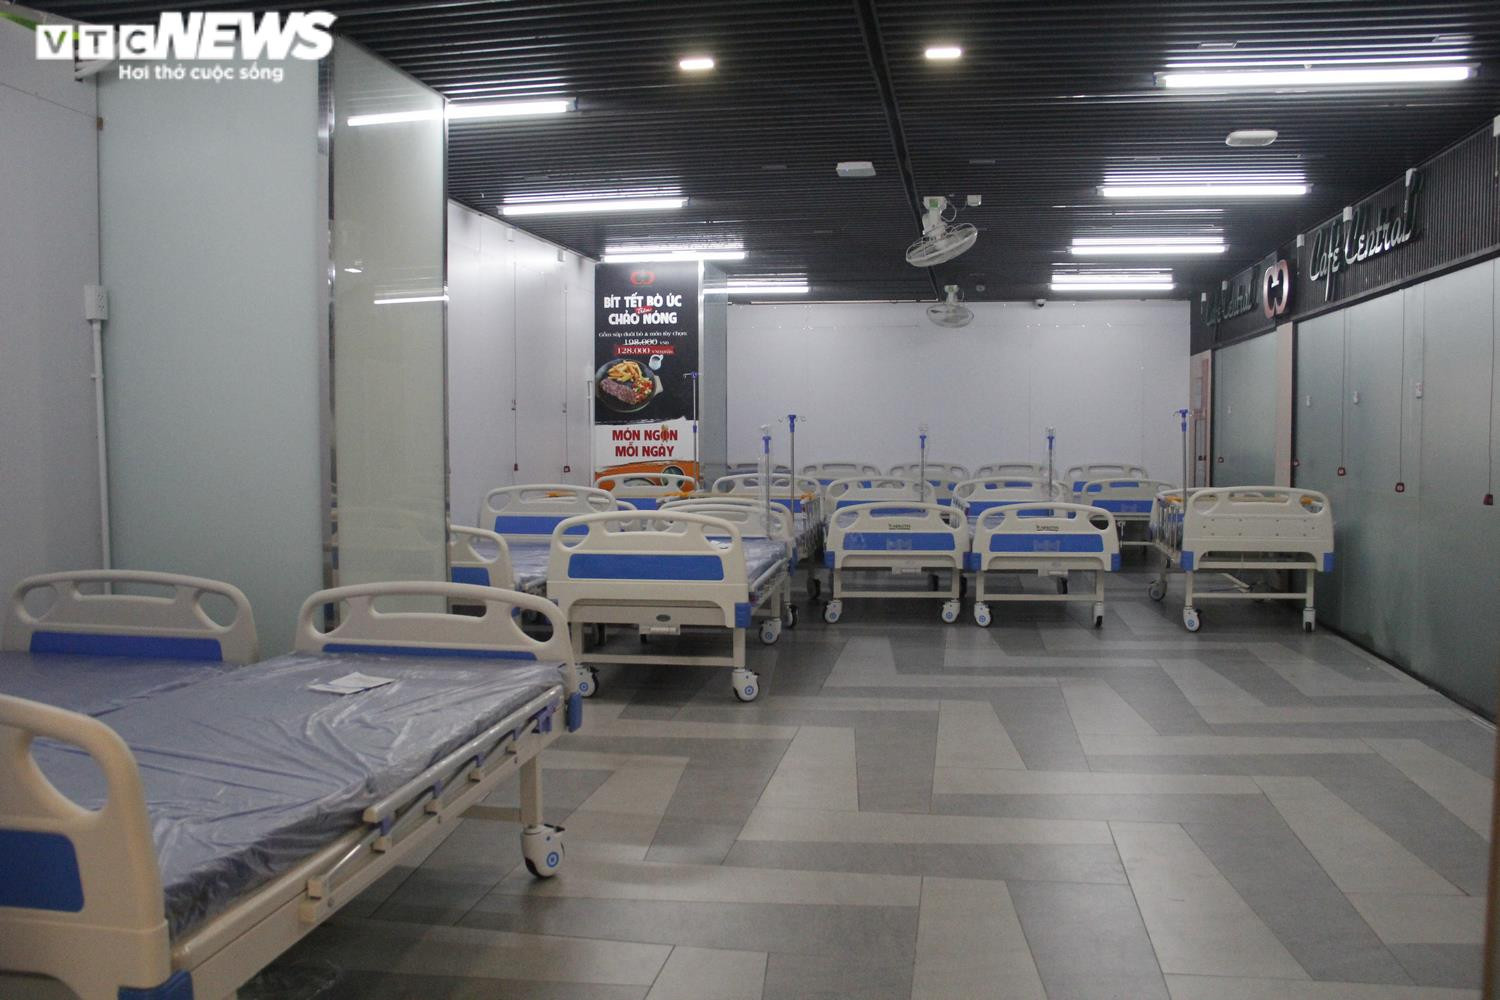 Ảnh: Cận cảnh bên trong bệnh viện dã chiến ở Thuận Kiều Plaza - 4